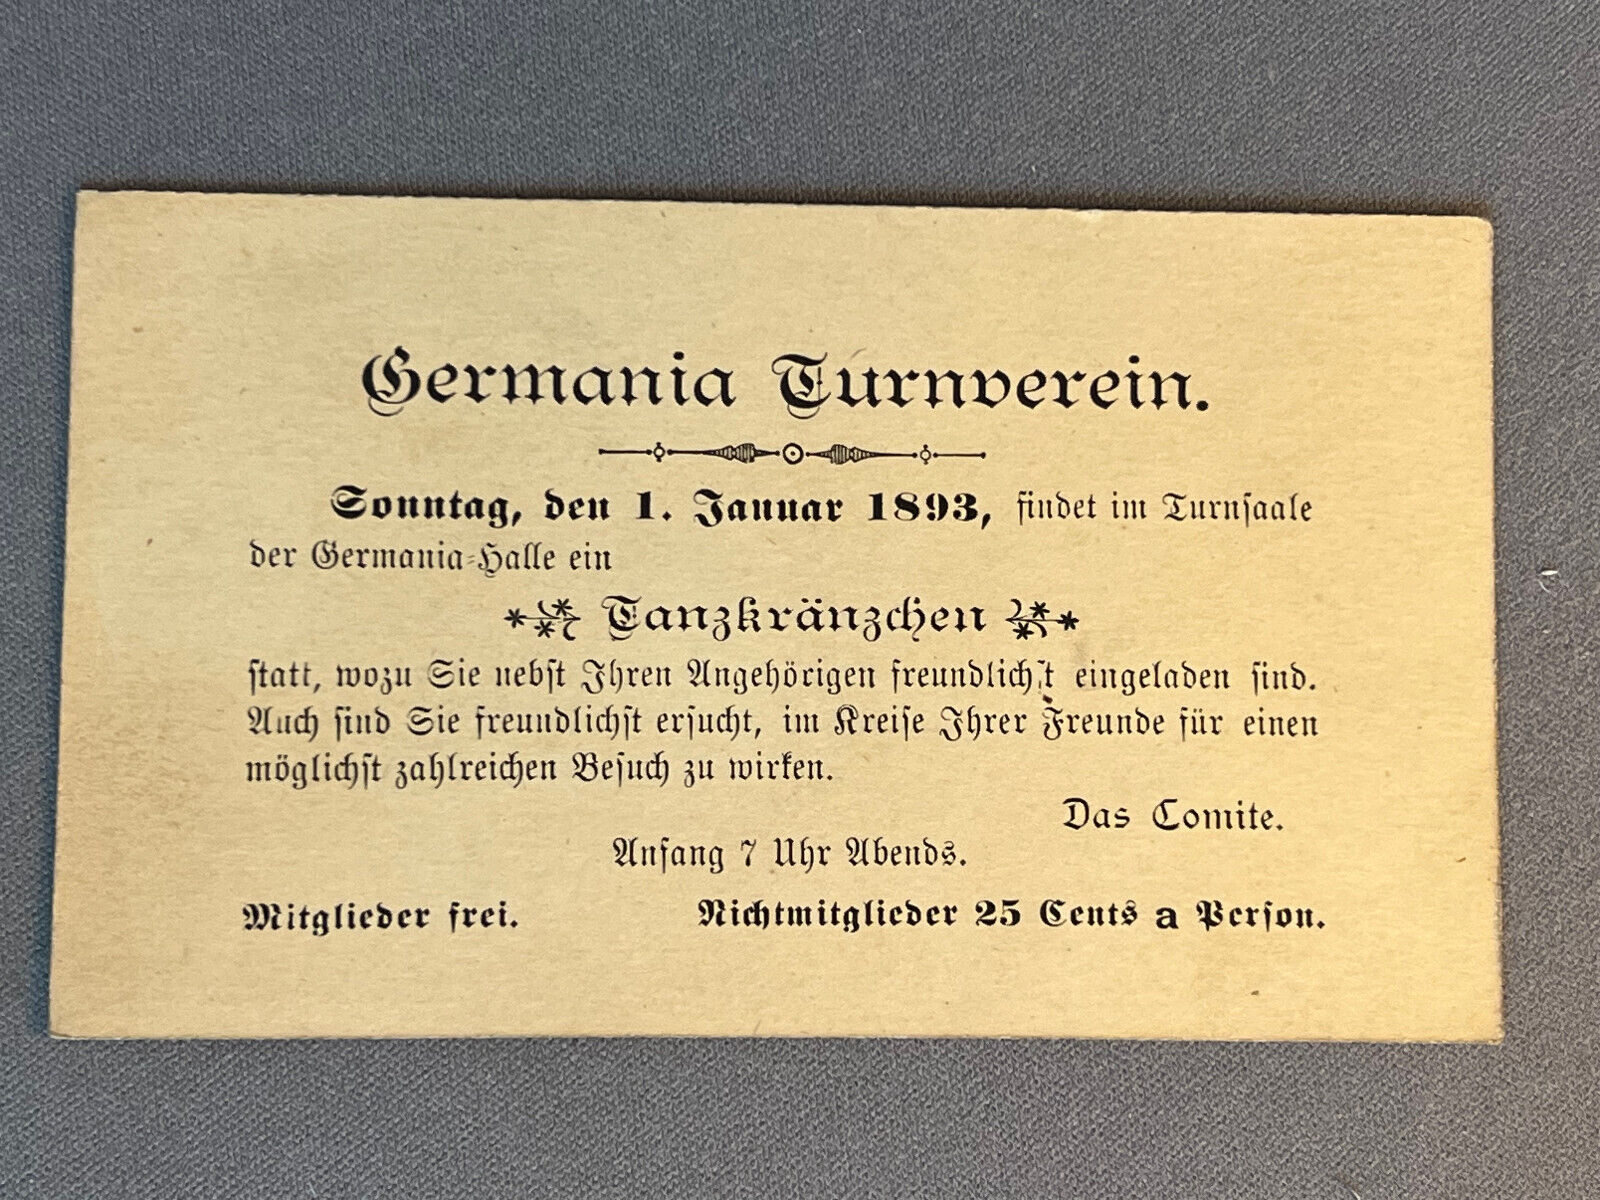 Adv., Germania Turnverein Invitation, American Turners, 1893